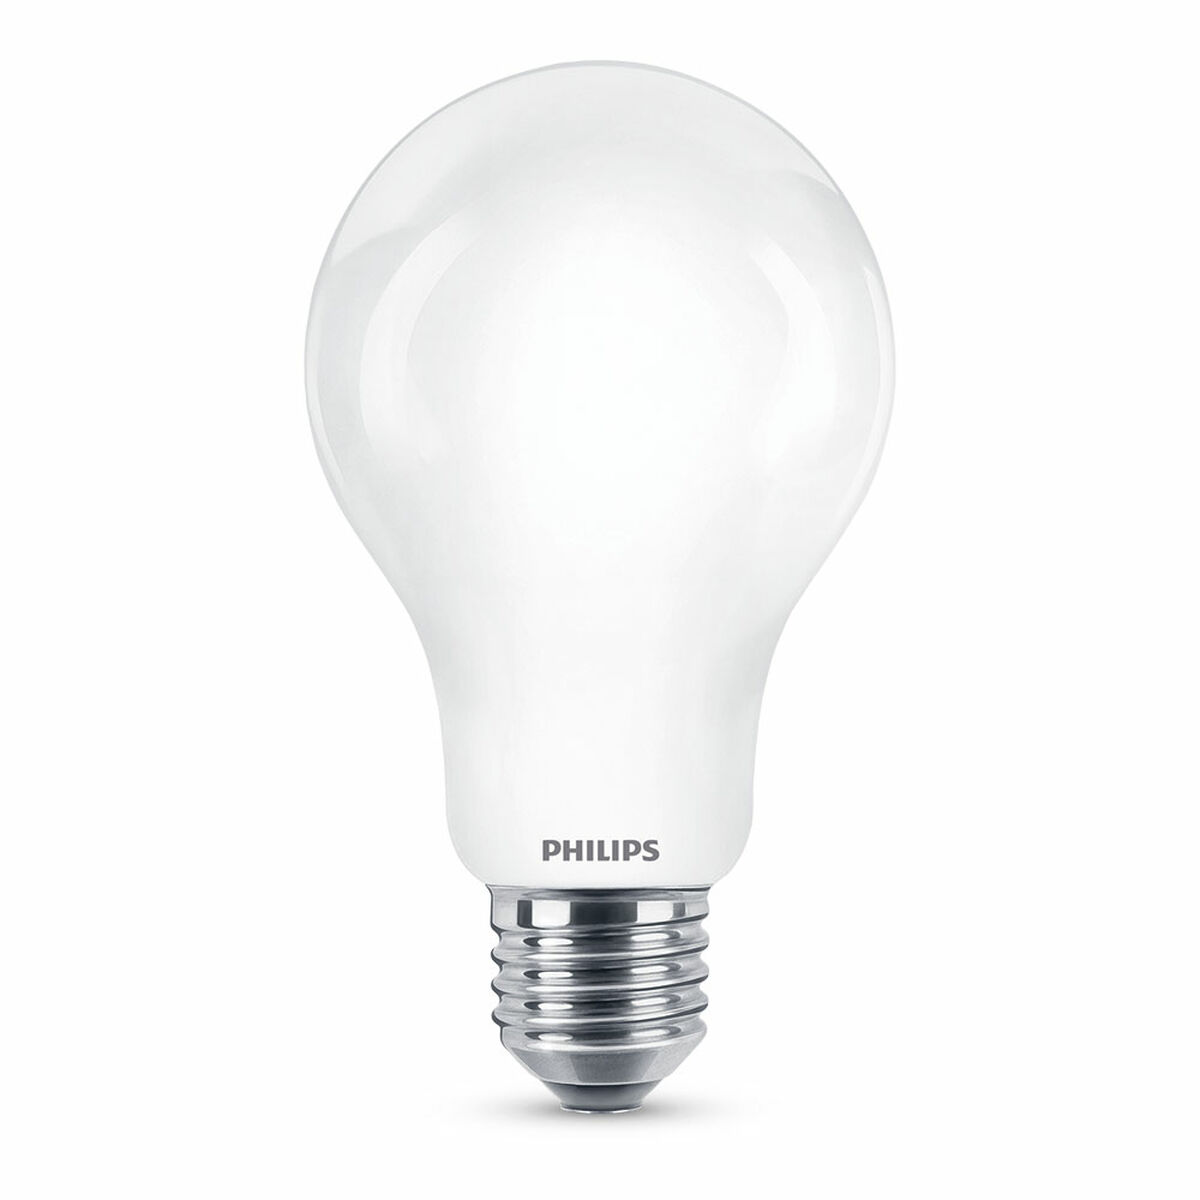 Lampe LED Philips 2452 lm E27 D 17,5 W 7,5 x 12,1 cm (6500 K)